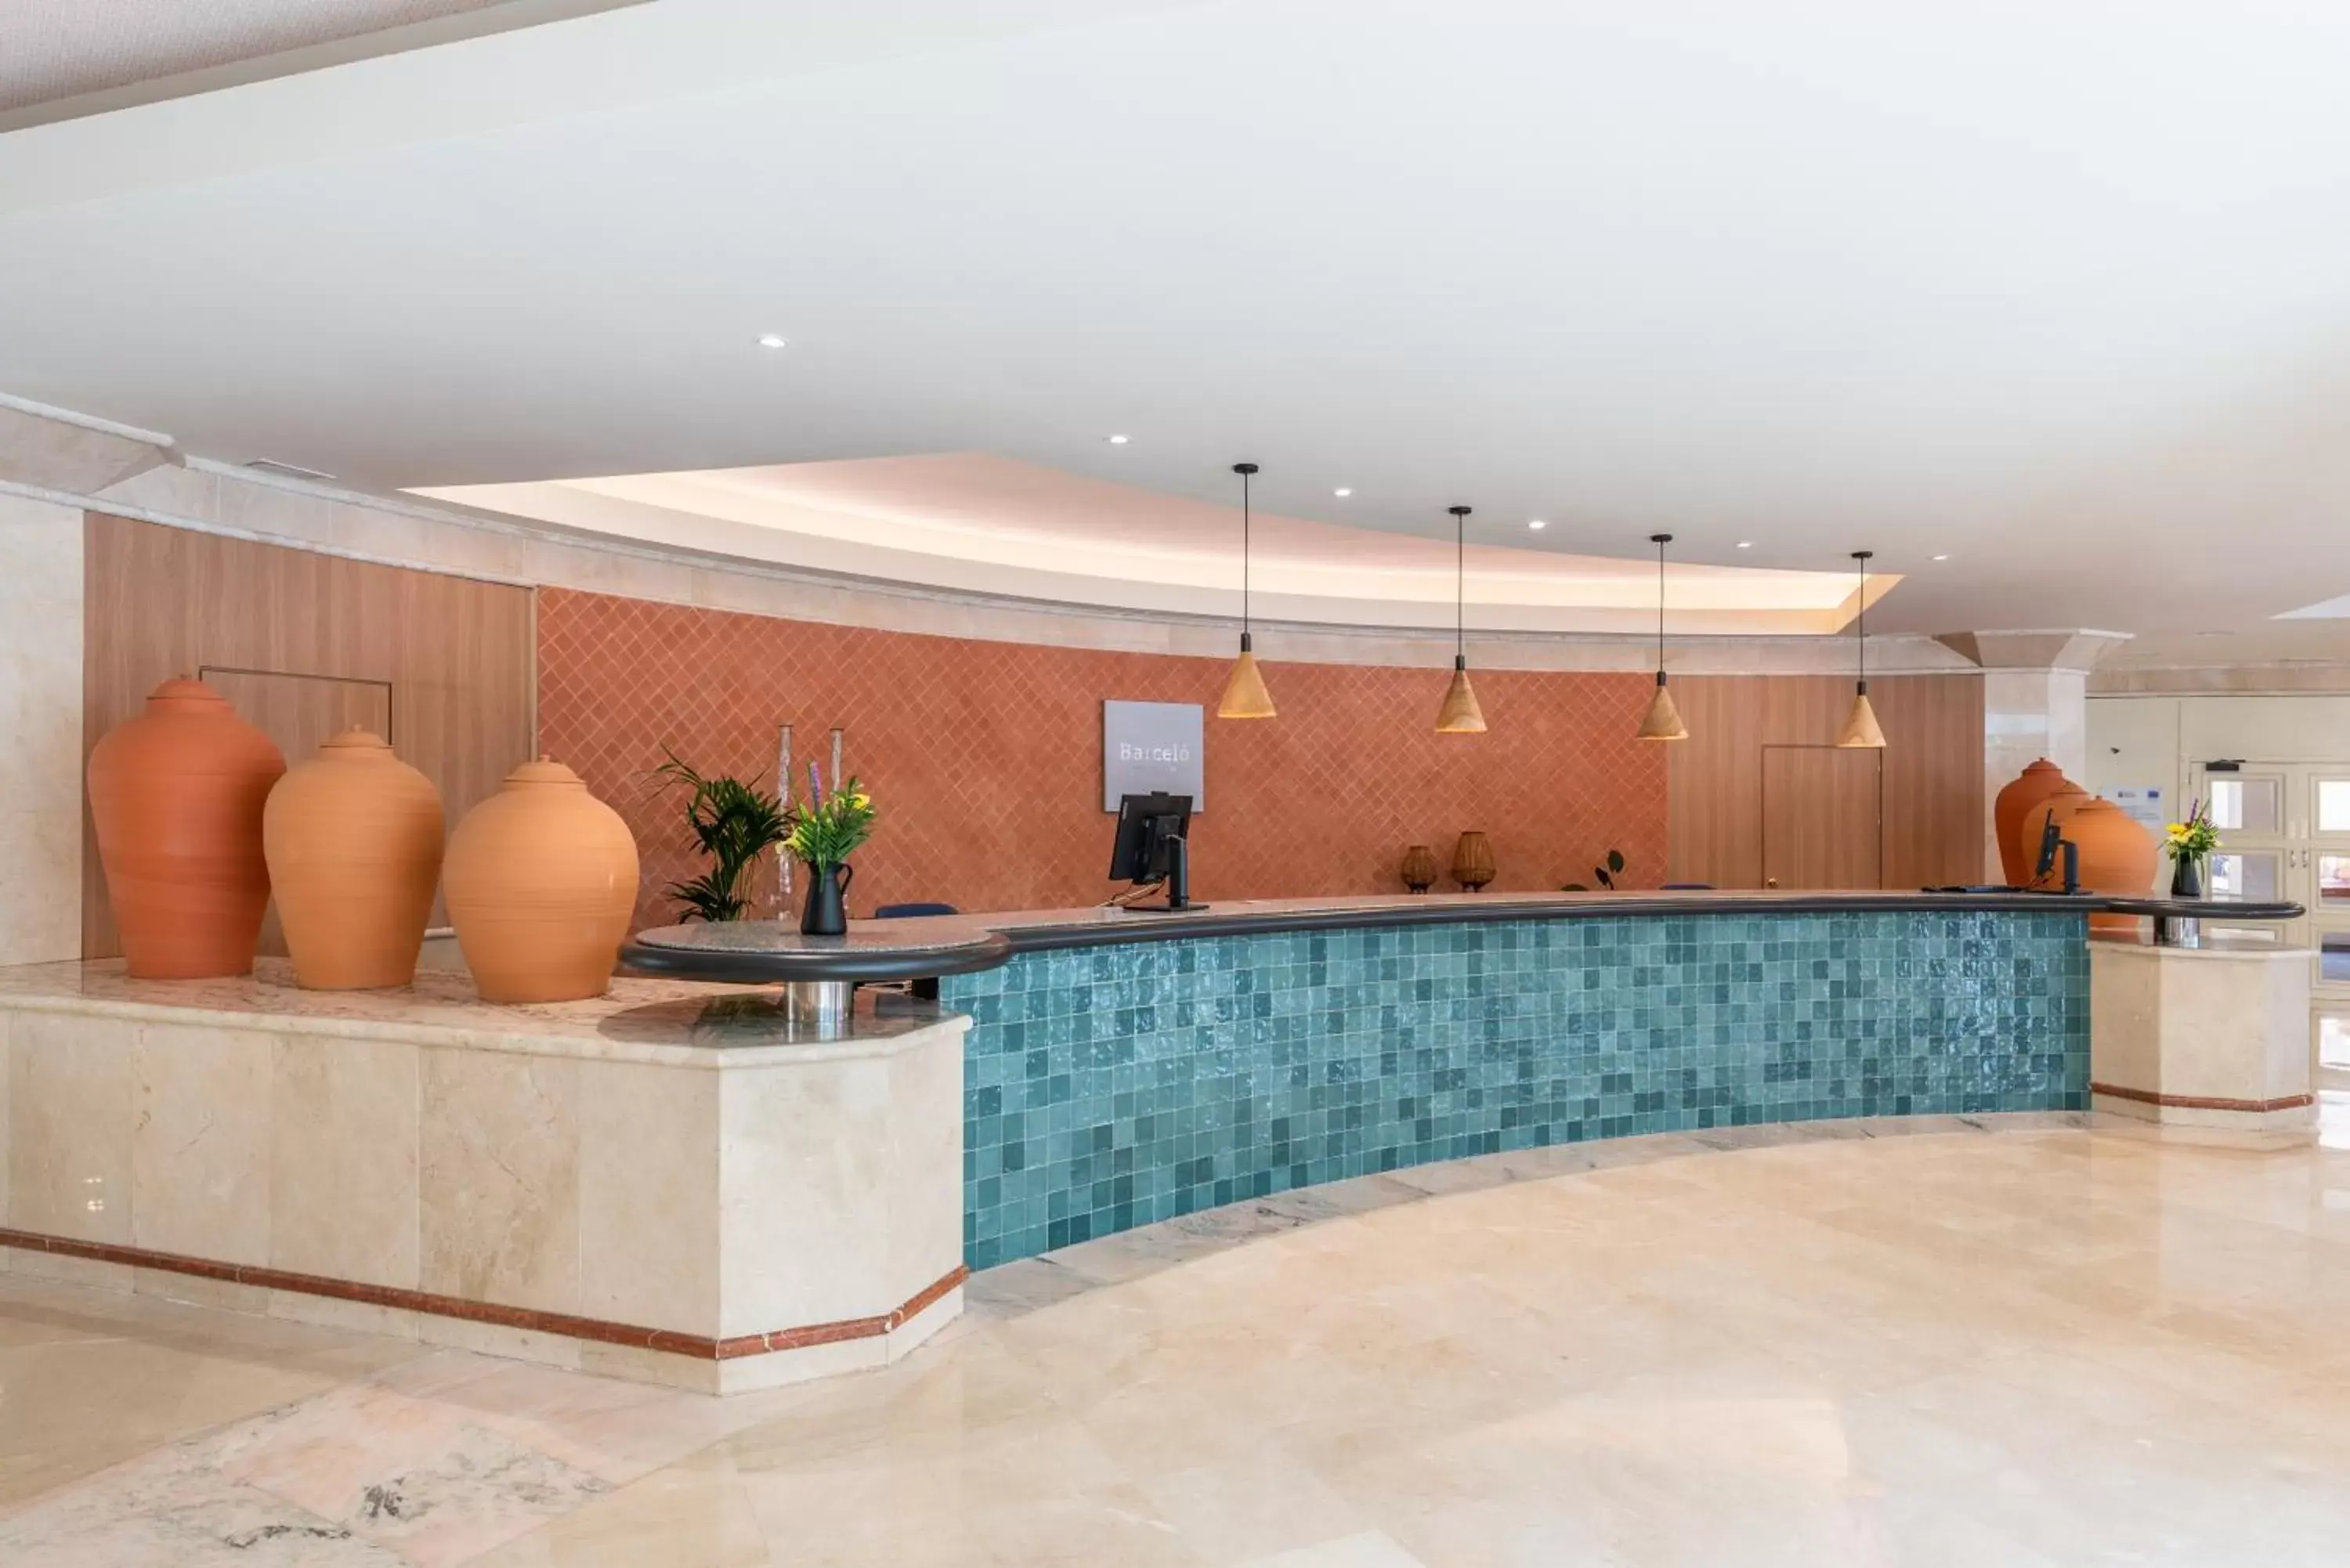 Lobby or reception in Barceló Lanzarote Active Resort